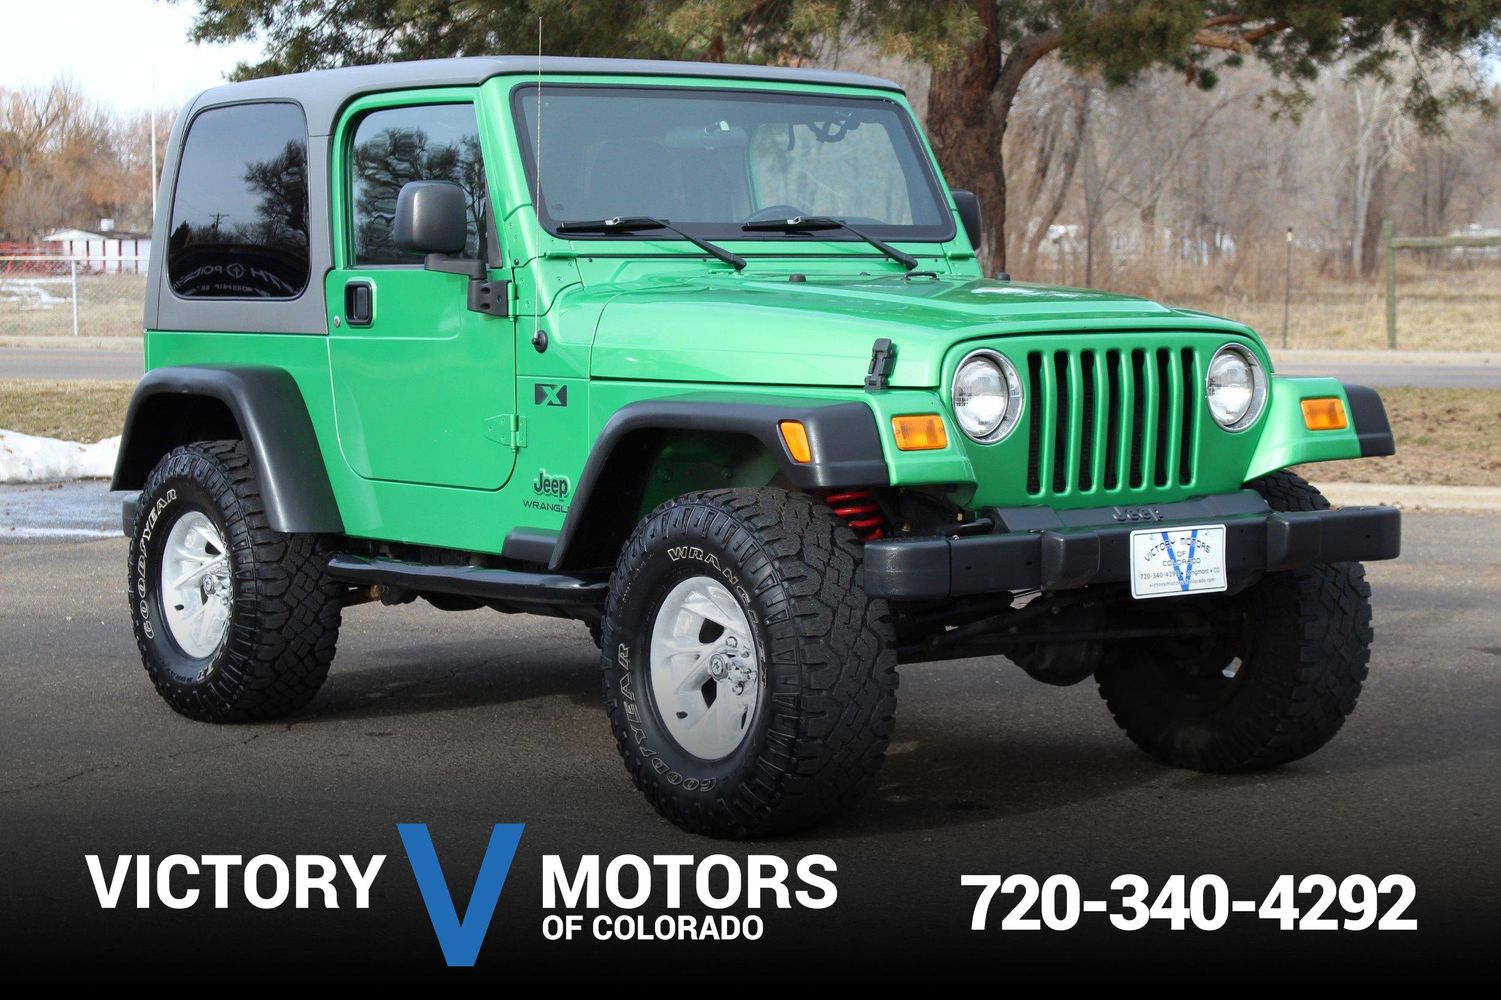 2005 Jeep Wrangler X | Victory Motors of Colorado